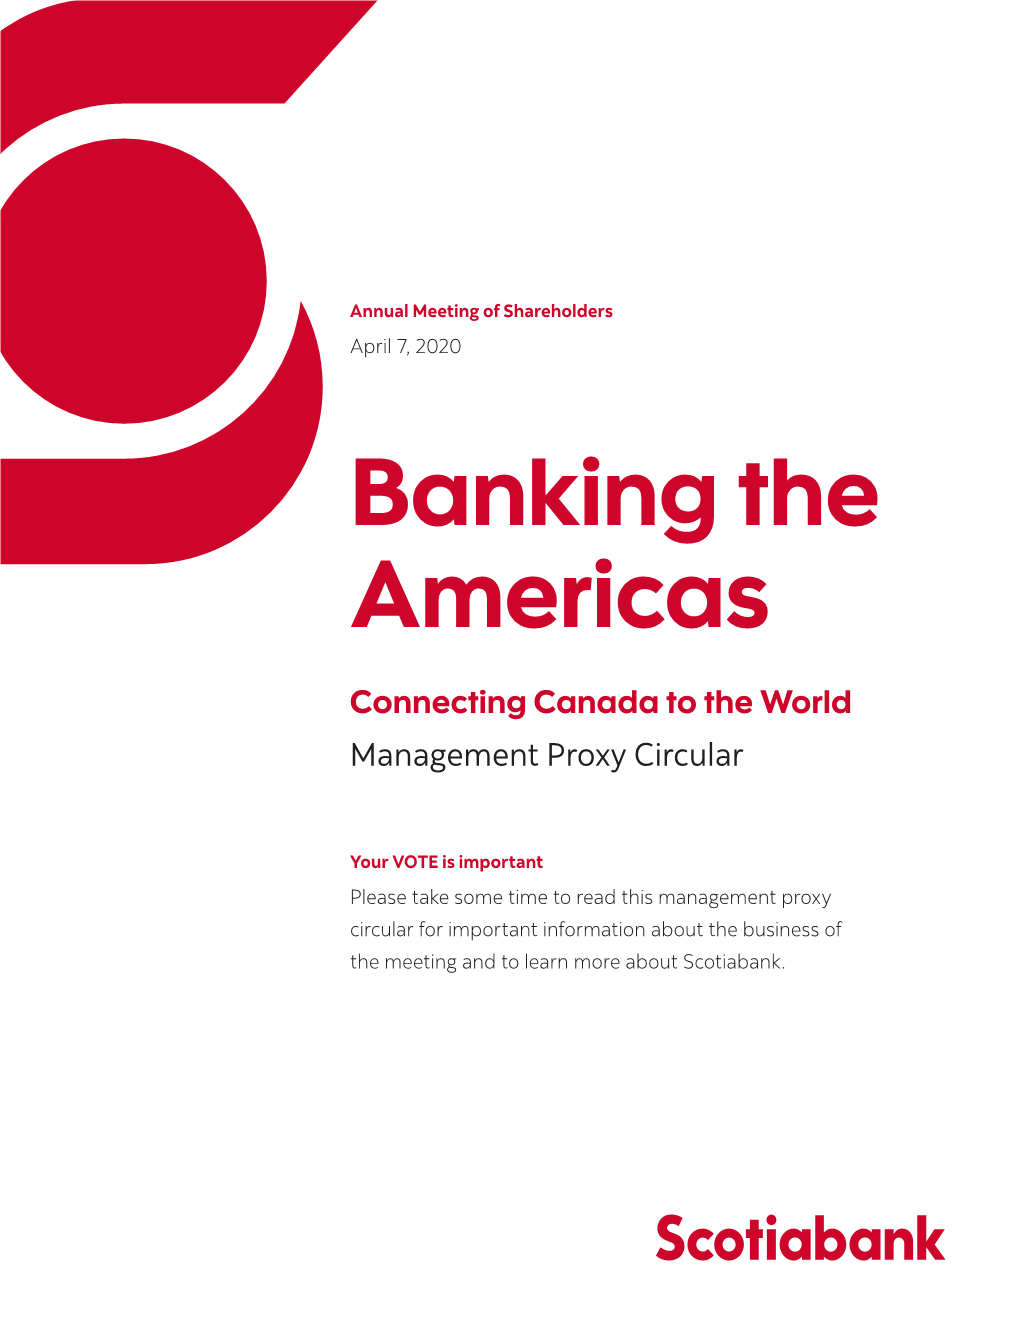 Scotiabank | Management Proxy Circular | April 7, 2020